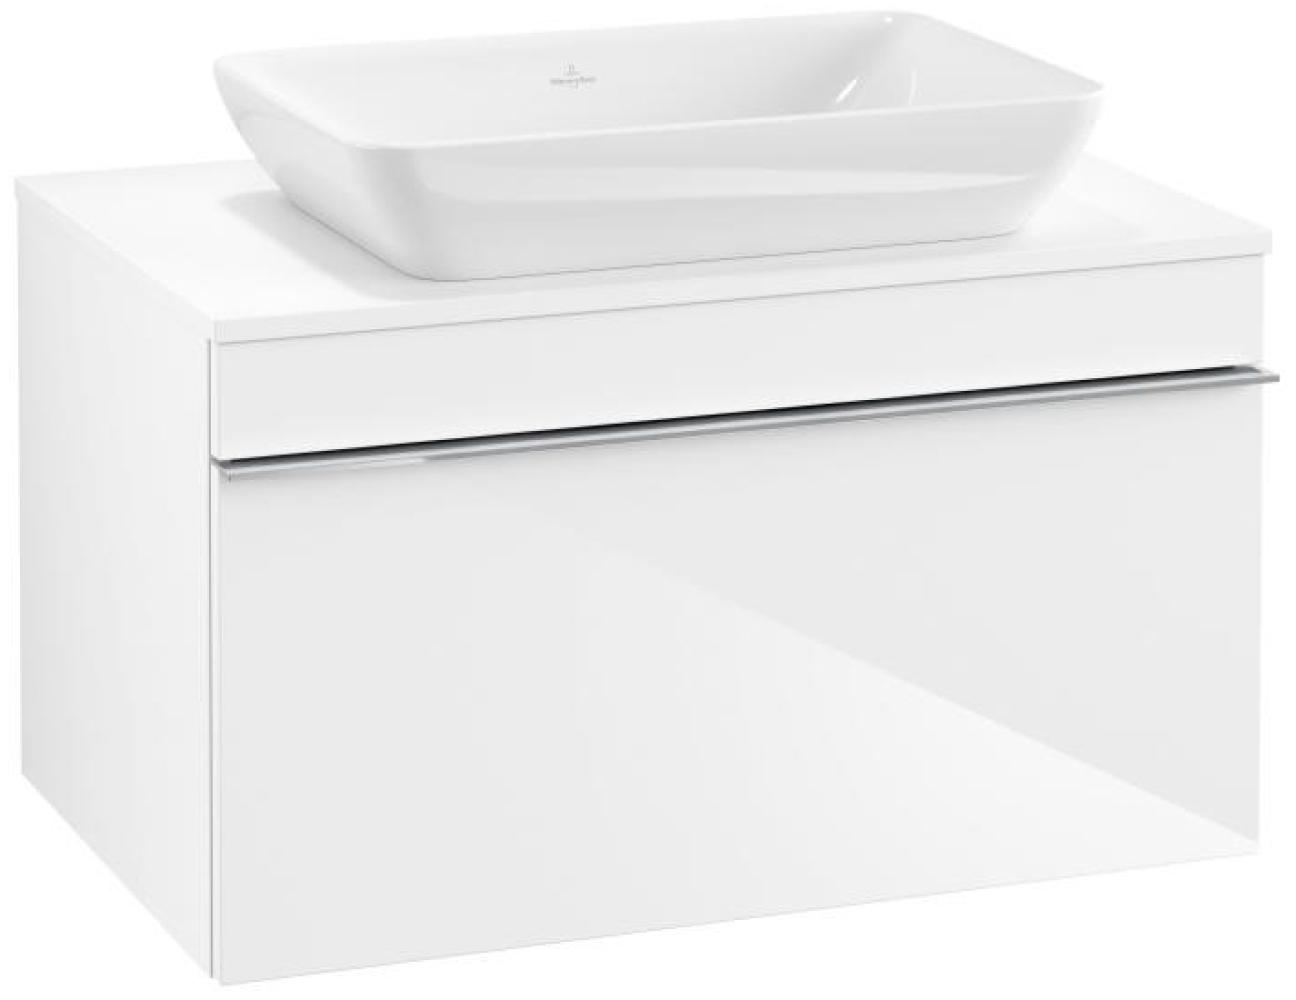 Villeroy & Boch VENTICELLO Waschtischunterschrank 75 cm breit, Weiß, Griff Chrom Bild 1